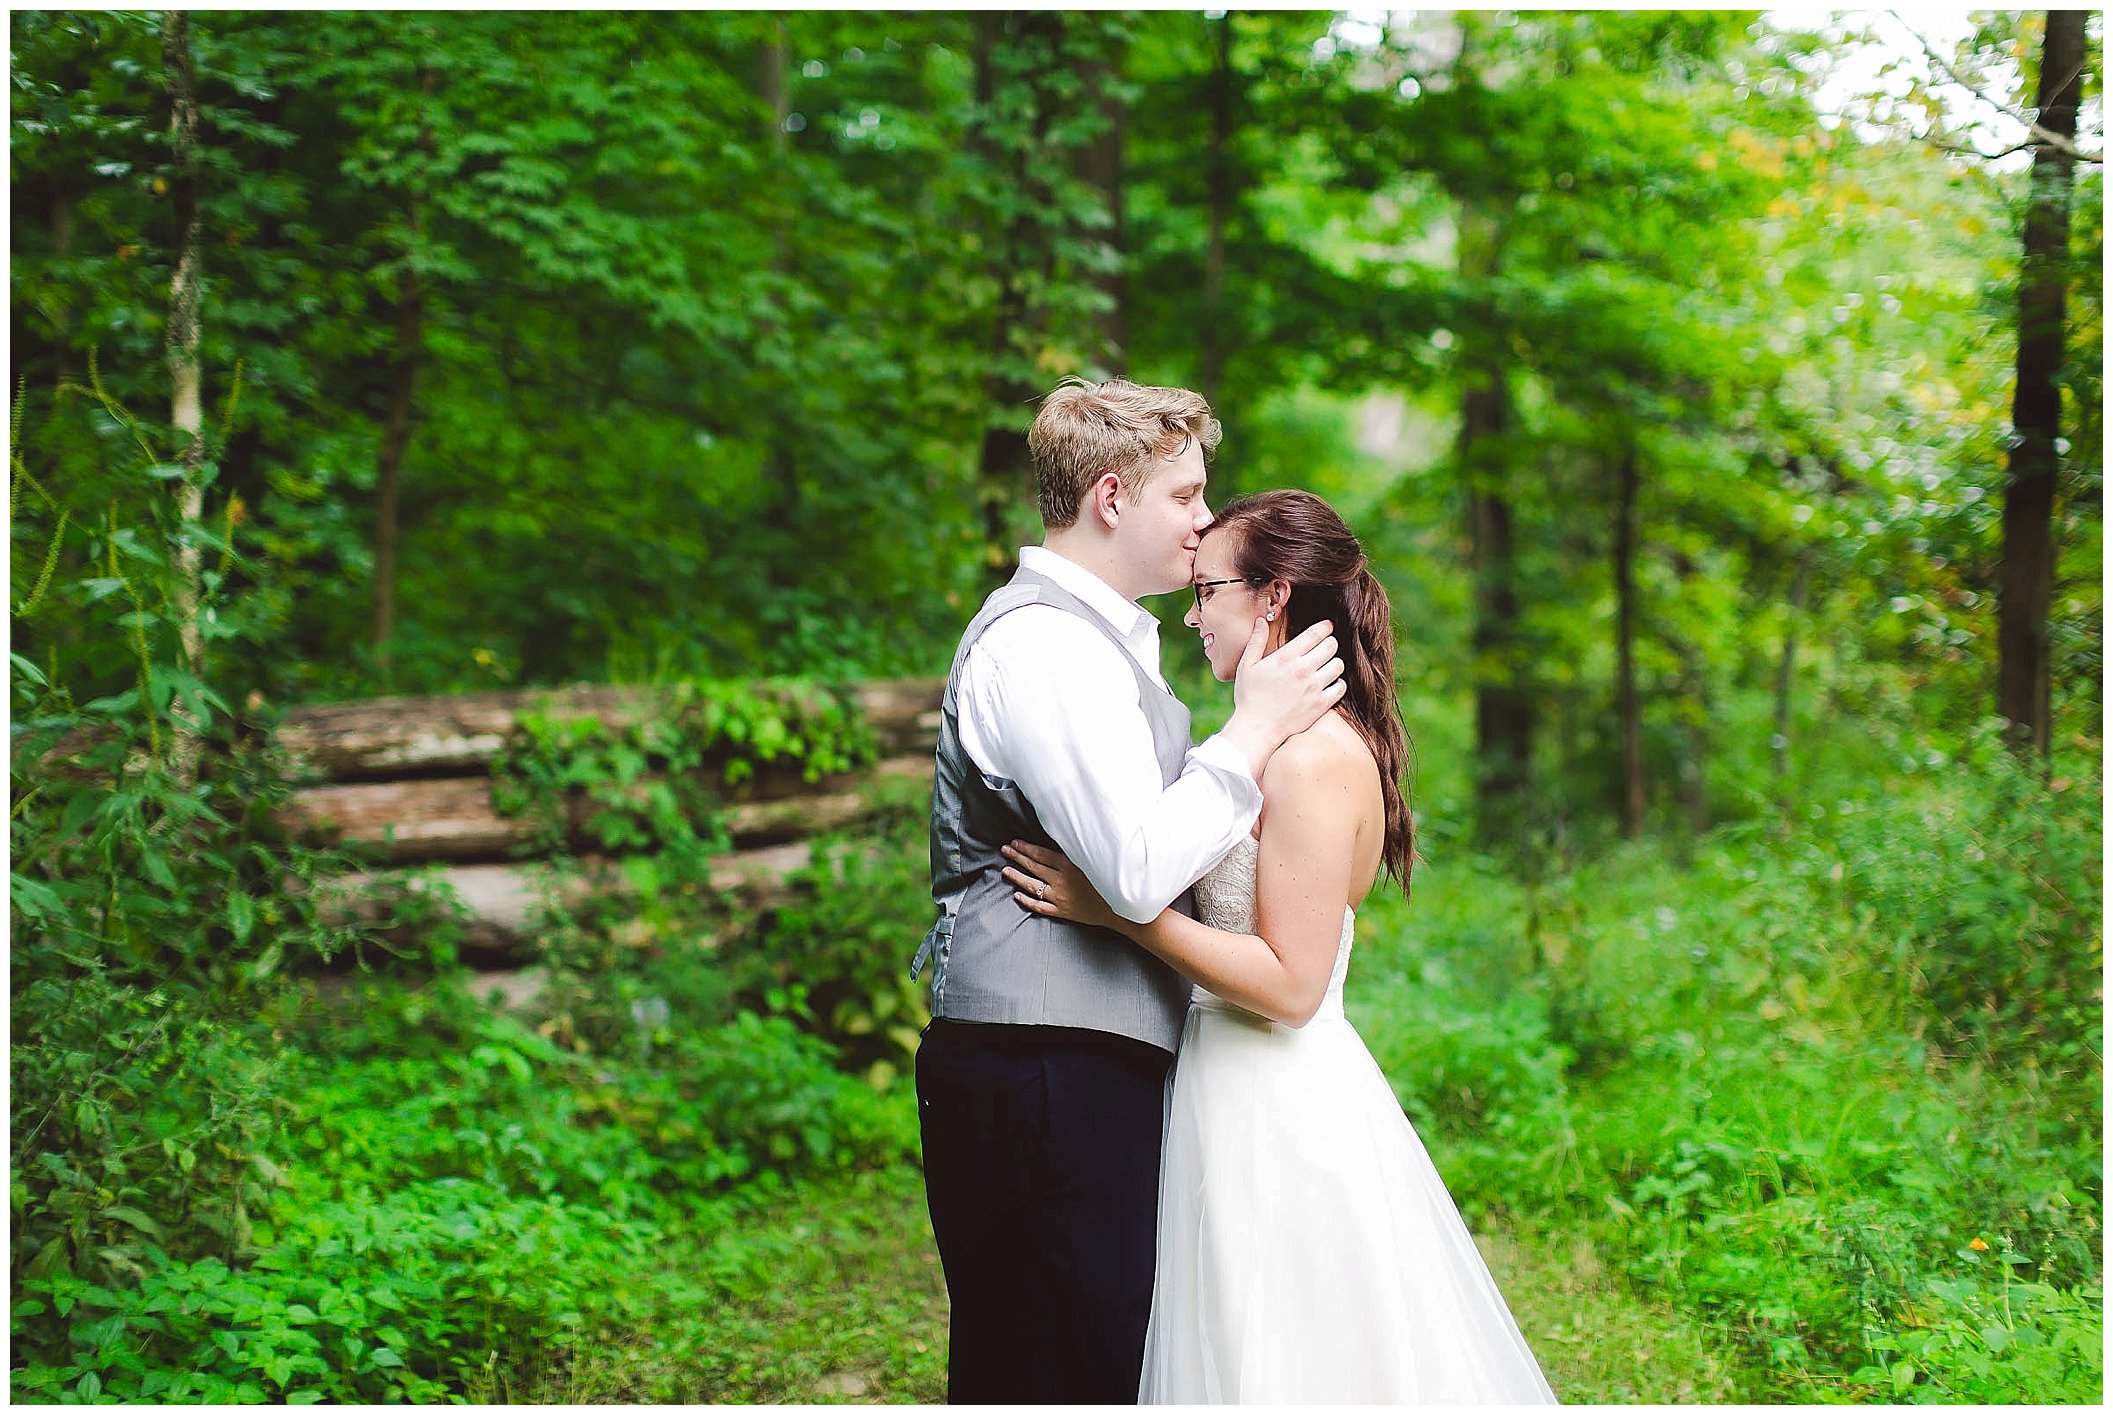 Stunning backyard wedding with twinkly lights, Fort Wayne Indiana Wedding Photographer_0043.jpg